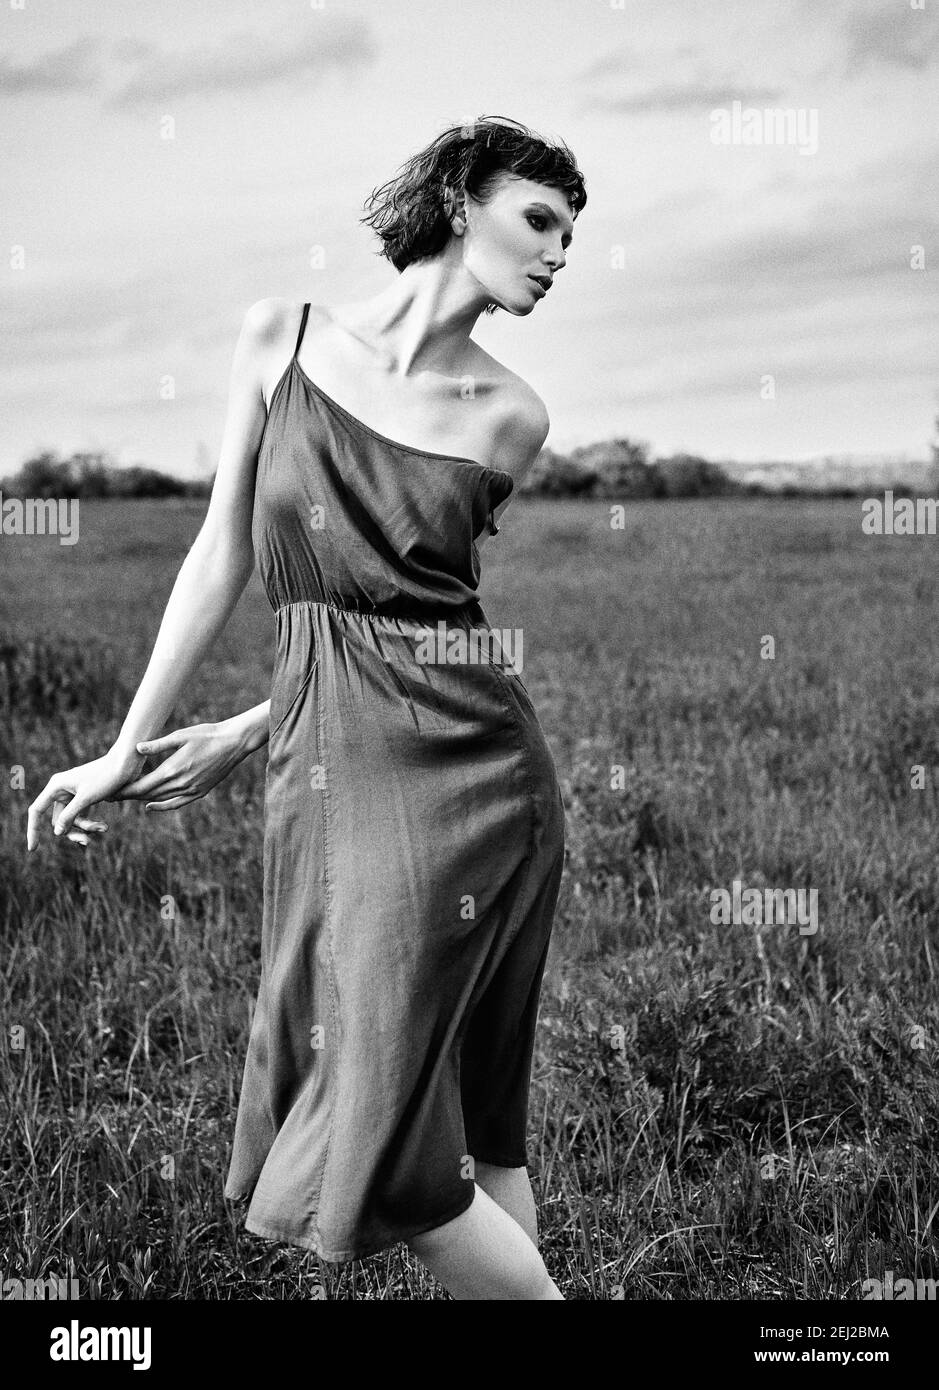 Outdoor Fashion shot: Schöne traurige Mädchen auf dem Feld. Porträt von hübschen jungen Frau im Kleid. Schwarz und Weiß. Filmkorneffekt Stockfoto